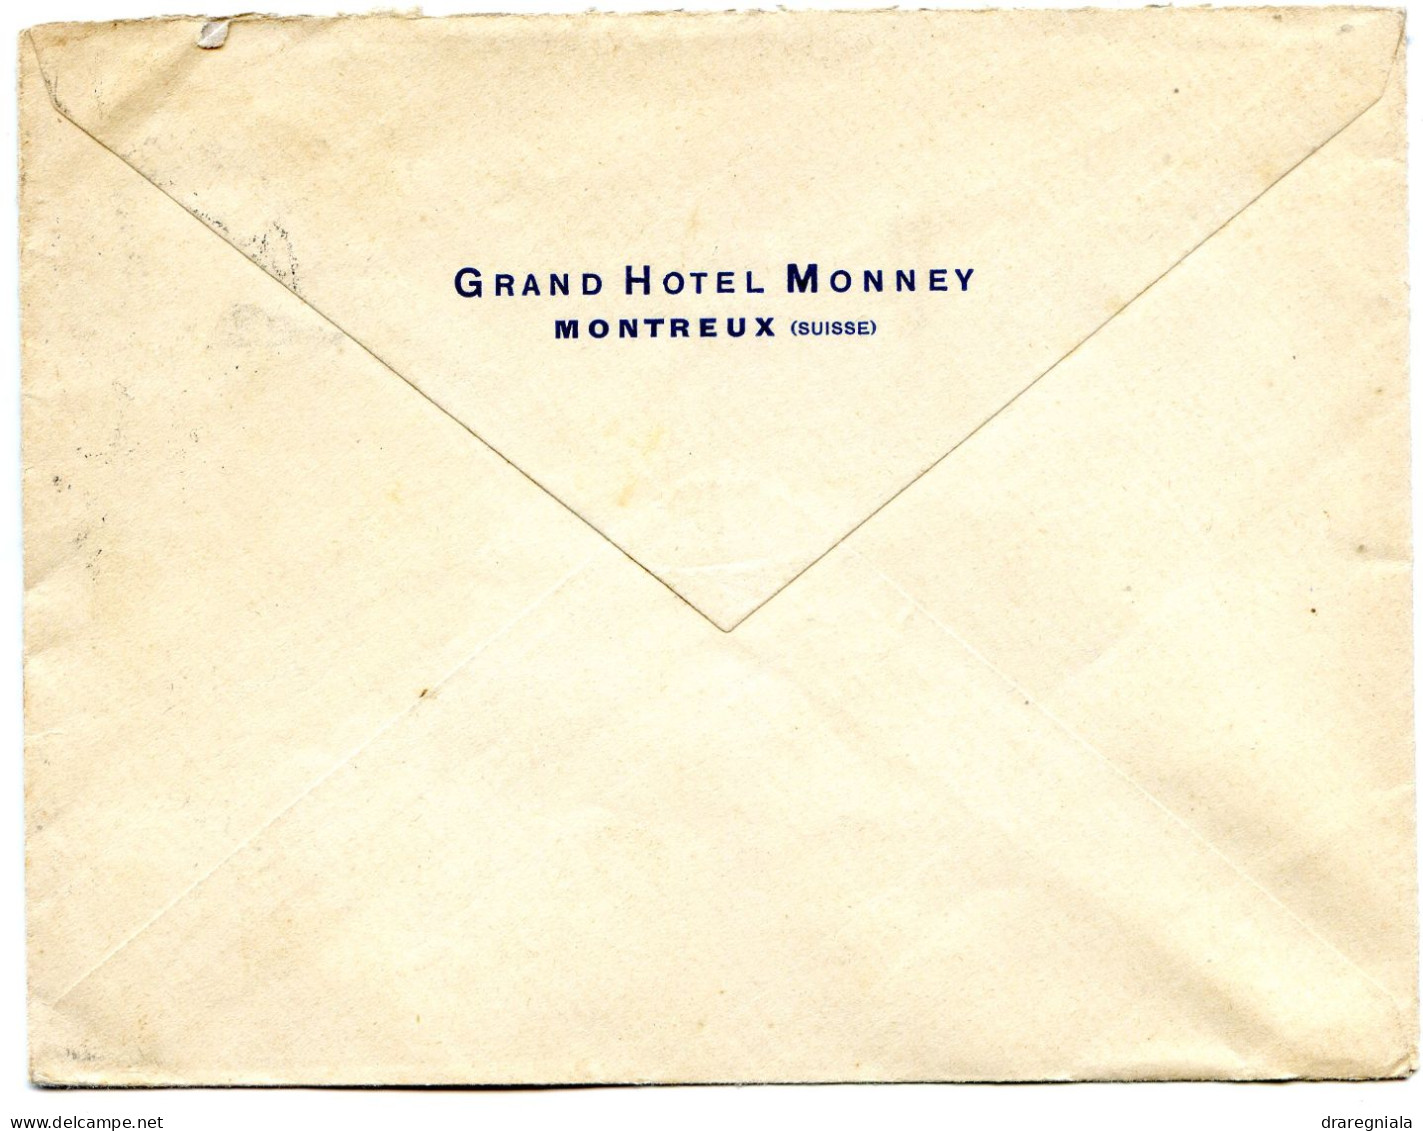 Mail Von Montreux 2 8 1930 - Tellbrustbild 160 - Grand Hotel Monney - Postmark Collection